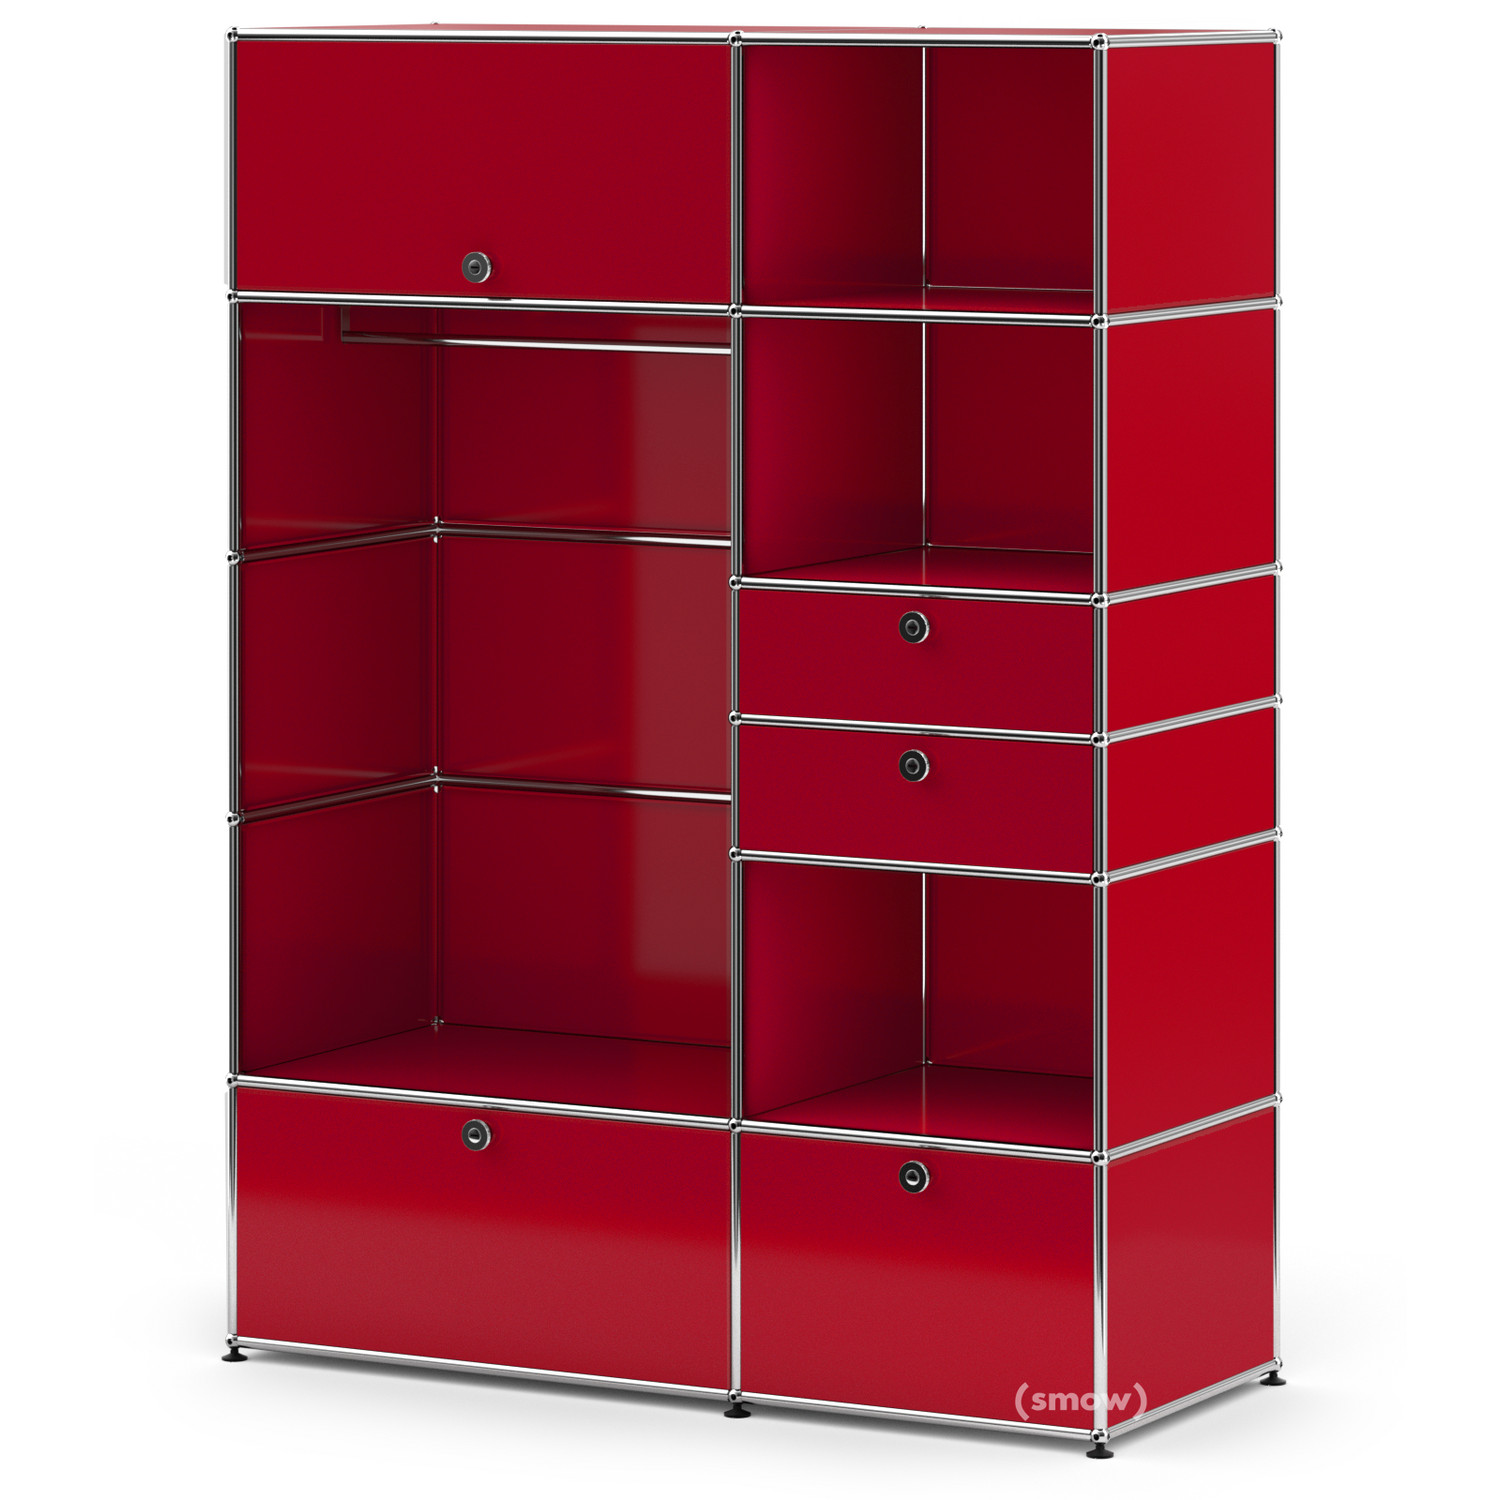 from USM furniture ruby USM Haller red Wardrobe - Haller I, USM Designer | Haller Wardrobes | Model USM